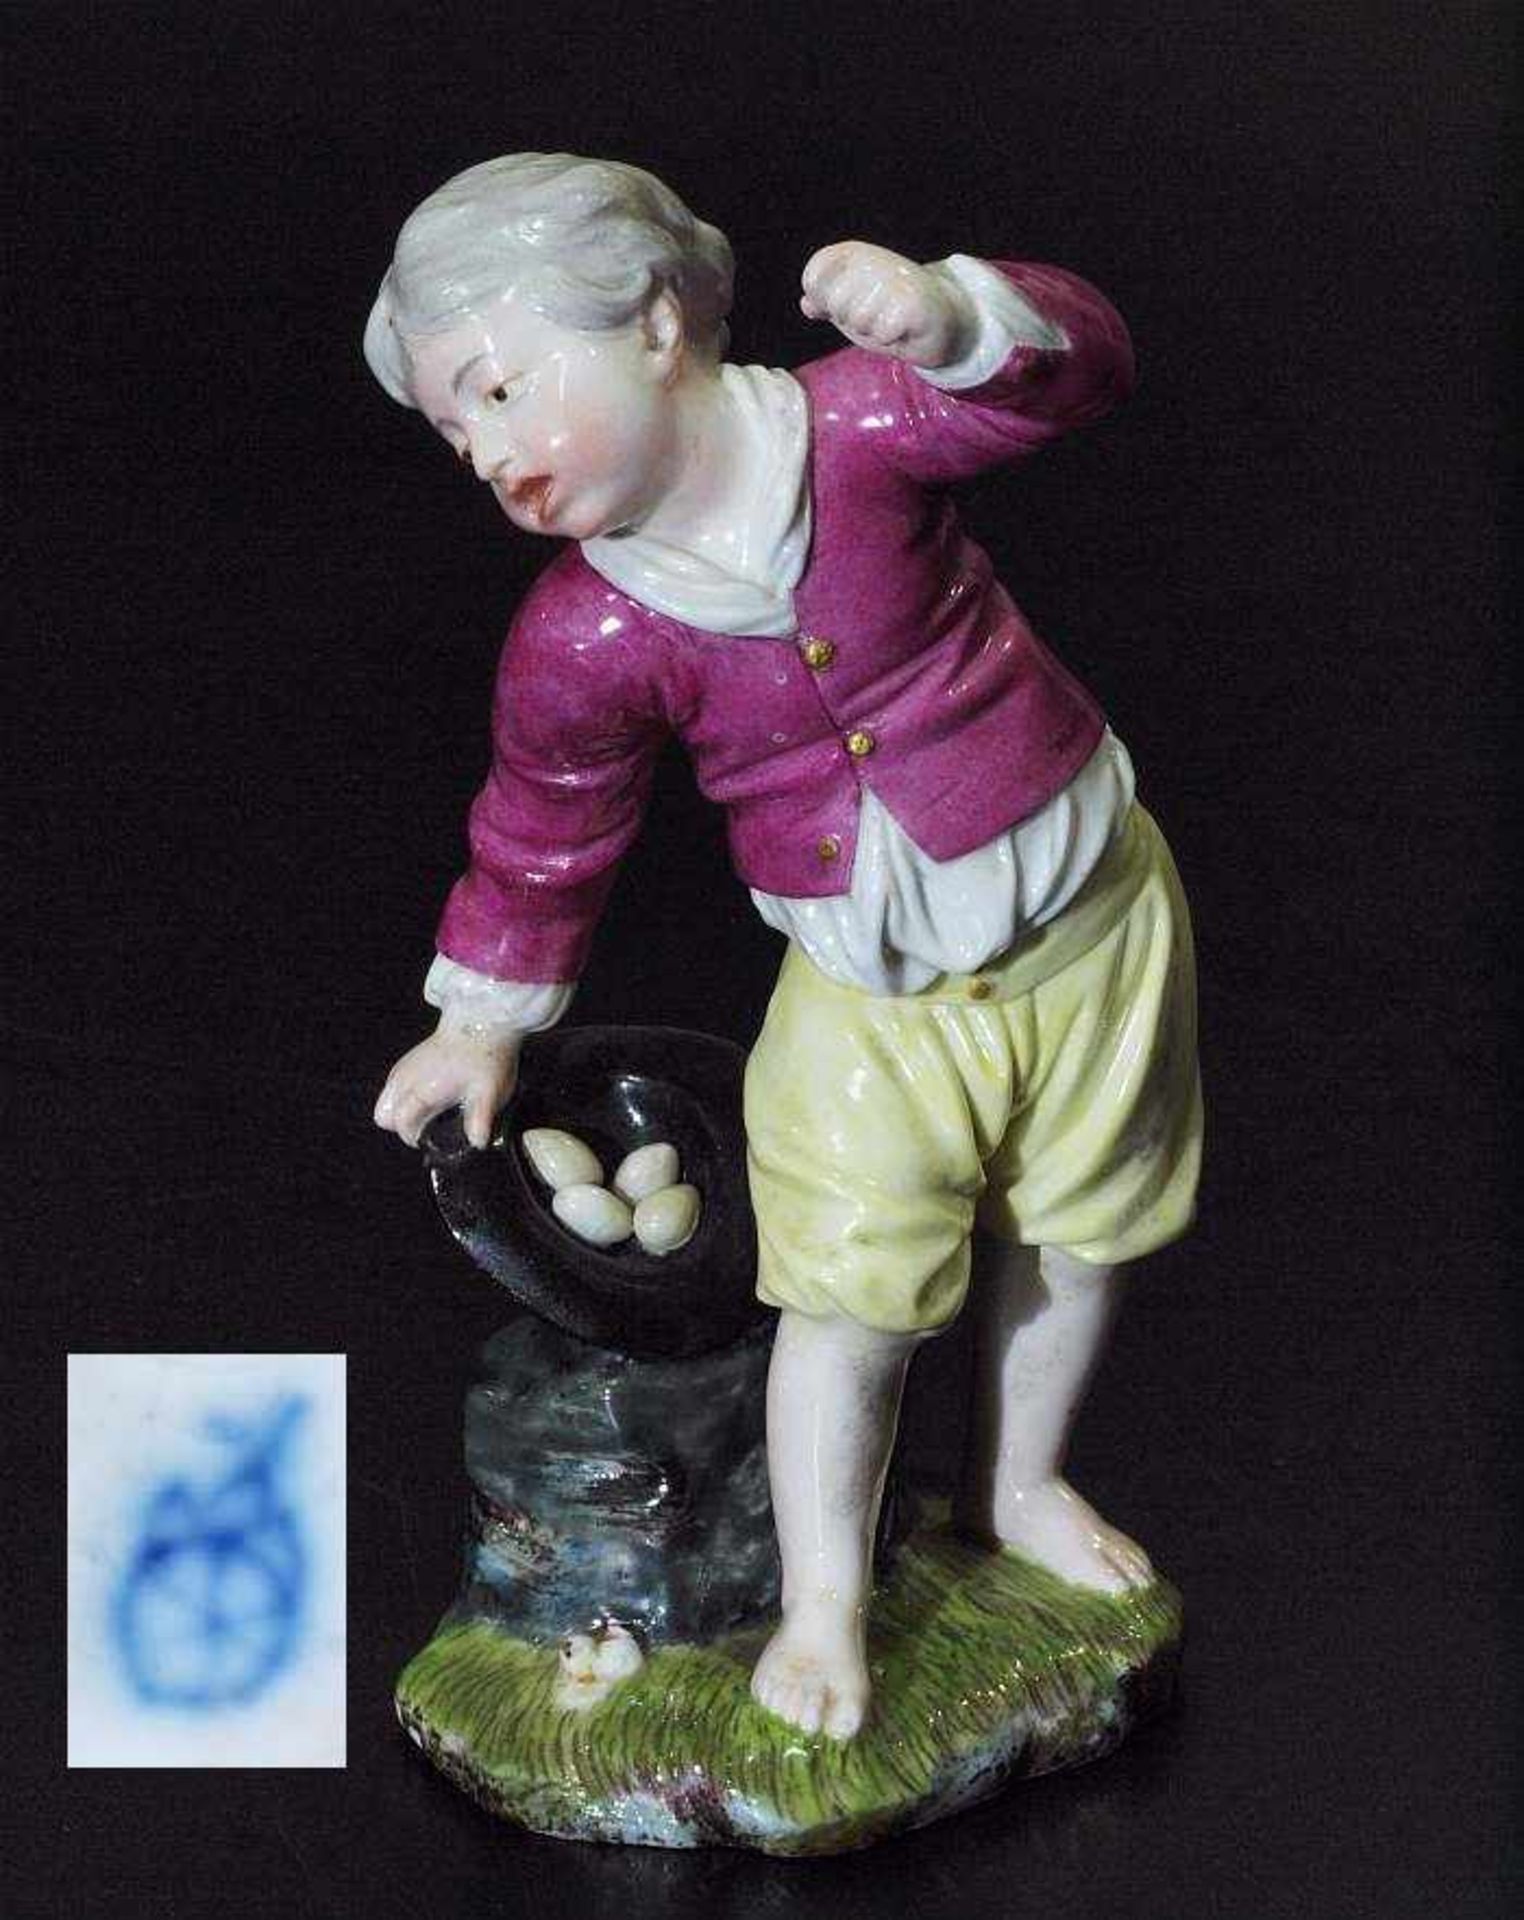 Kinderfigur "Das zerbrochene Ei". Kinderfigur "Das zerbrochene Ei". HÖCHST, Marke 1765 - 1796.